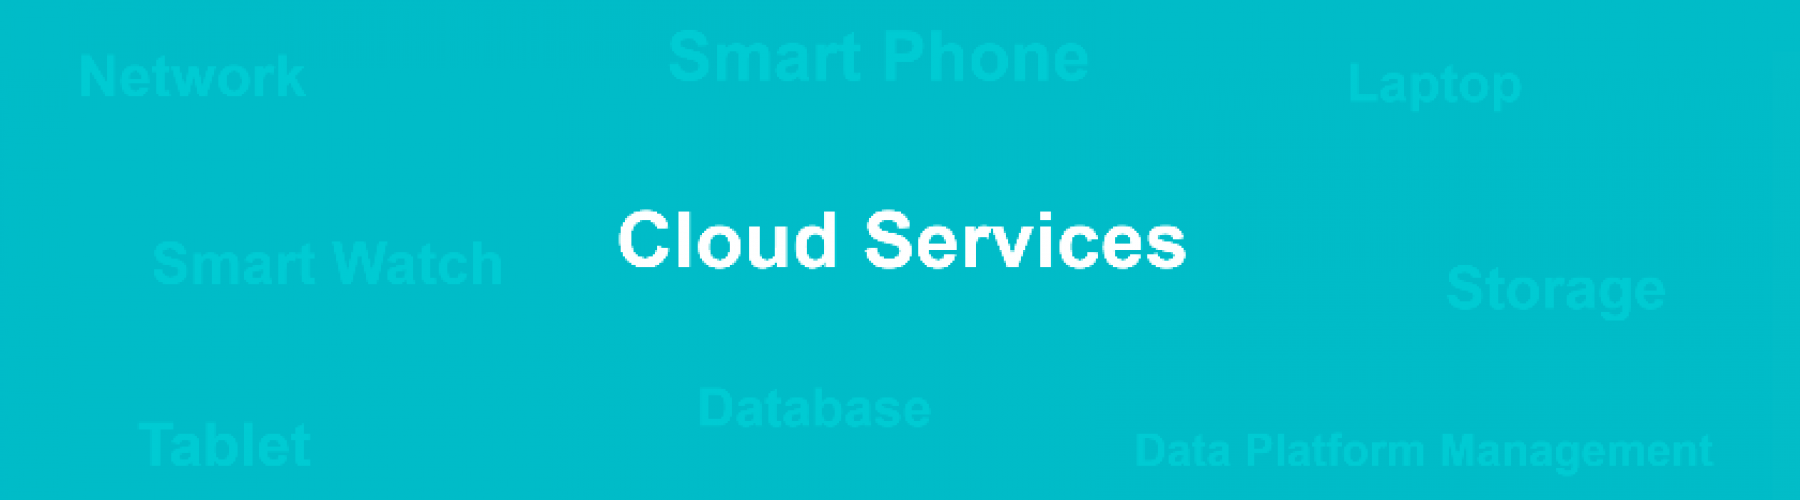 Cloud Services Image